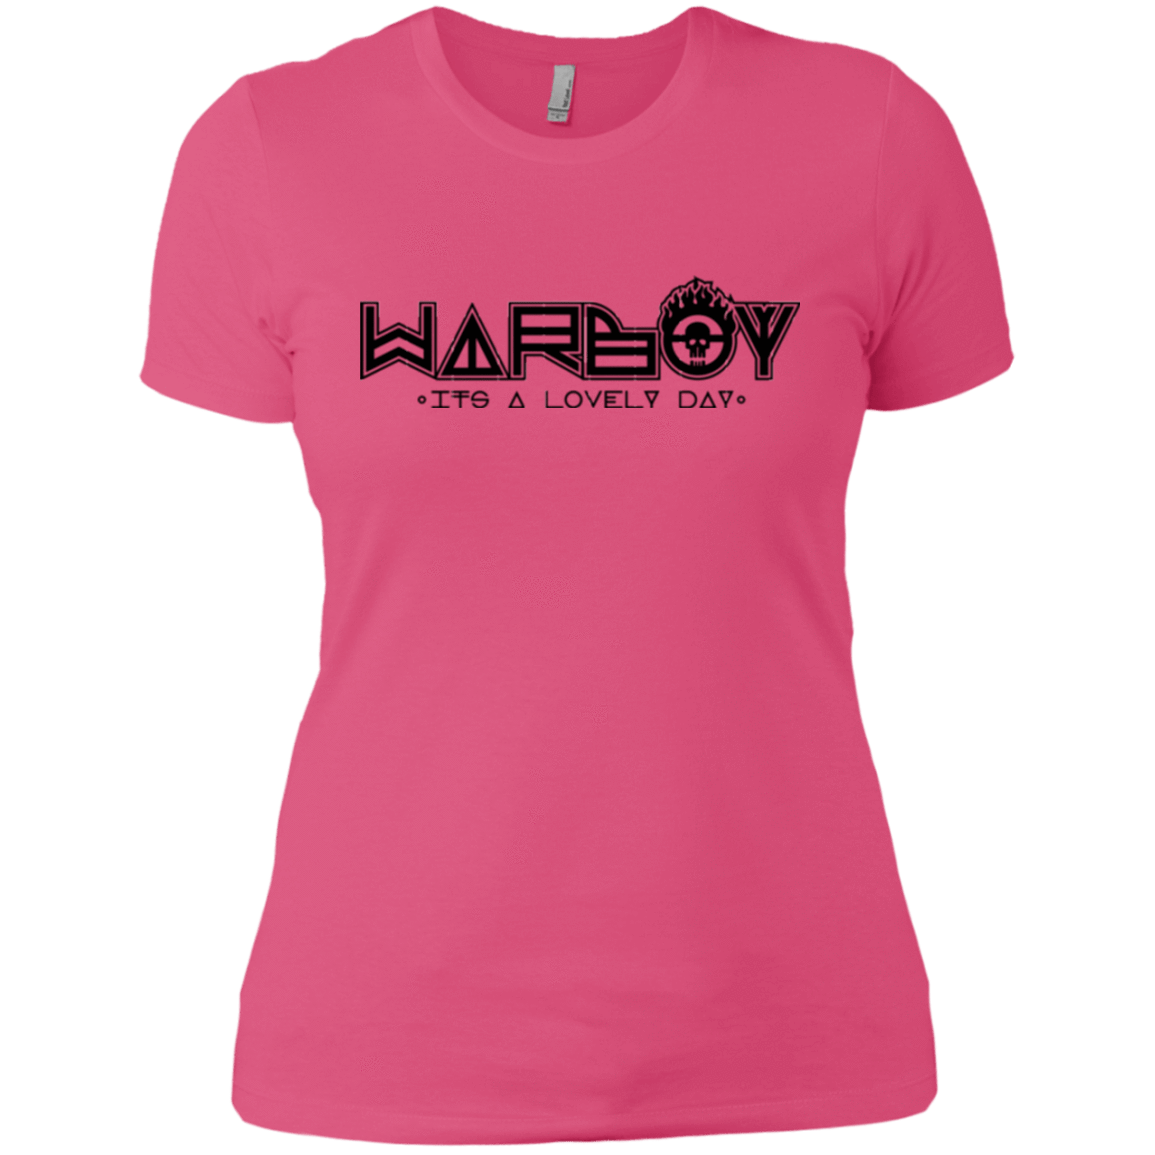 T-Shirts Hot Pink / X-Small War Boy Women's Premium T-Shirt